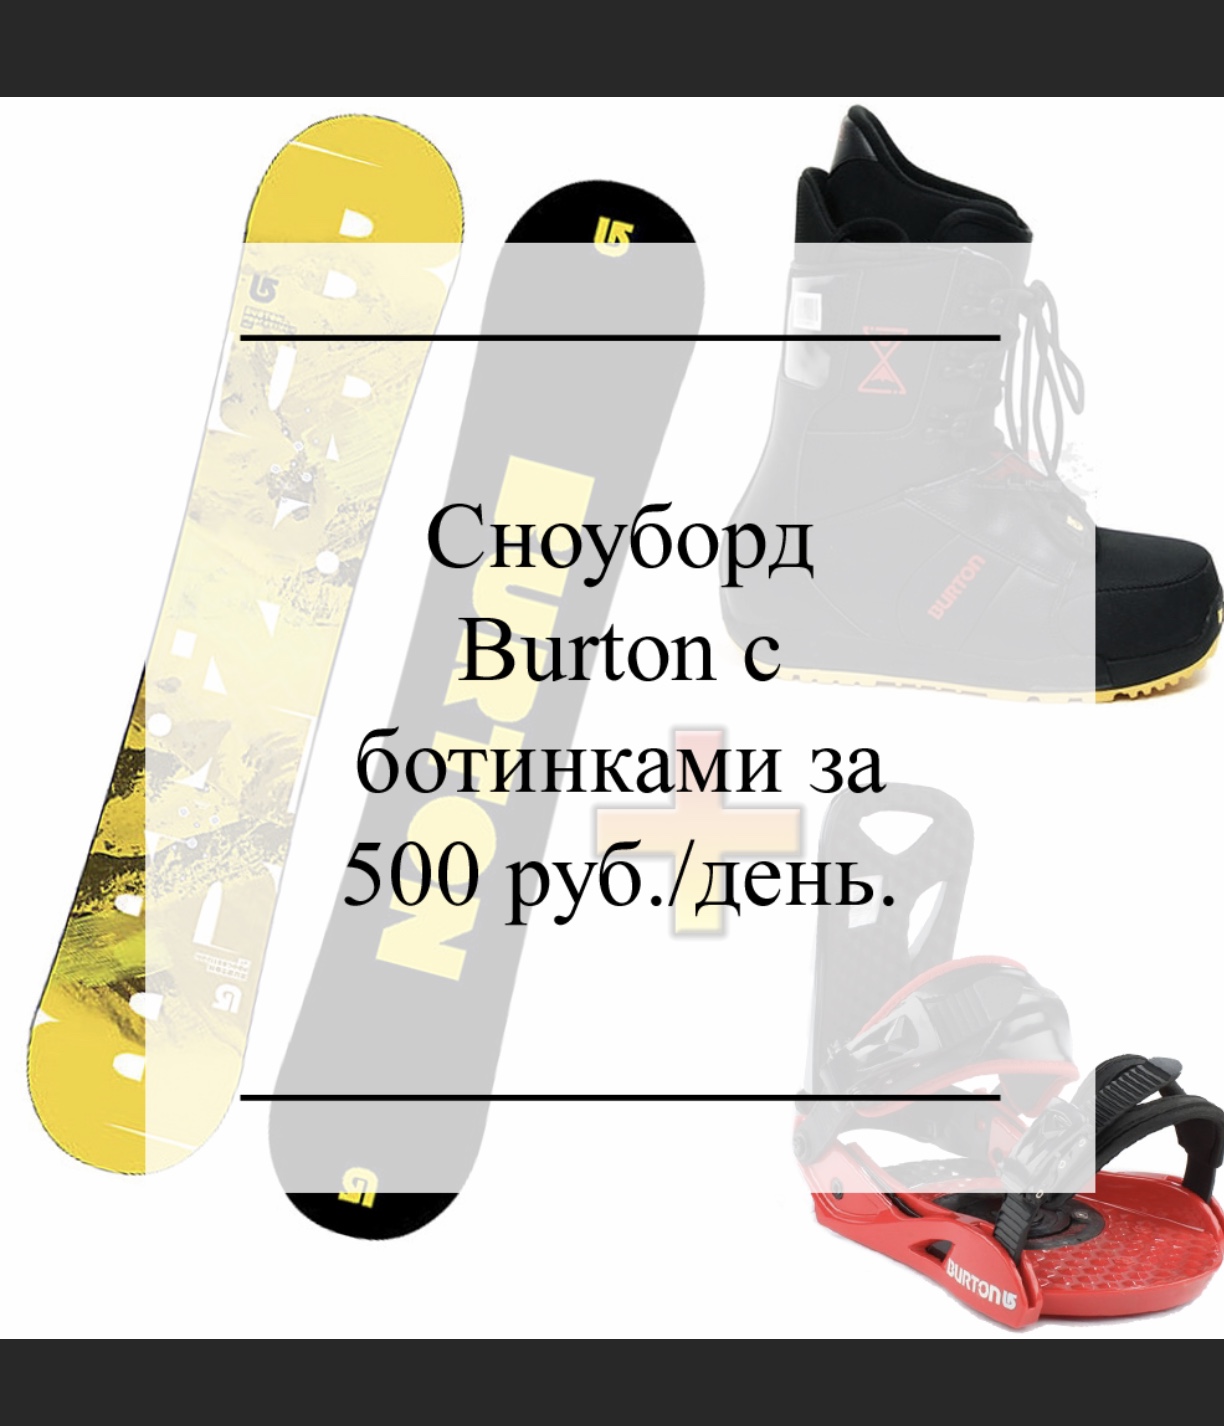 Прокат лыж и сноубордов Skiline - Пункты проката снаряжения и оборудования Сочи SOCHI.com